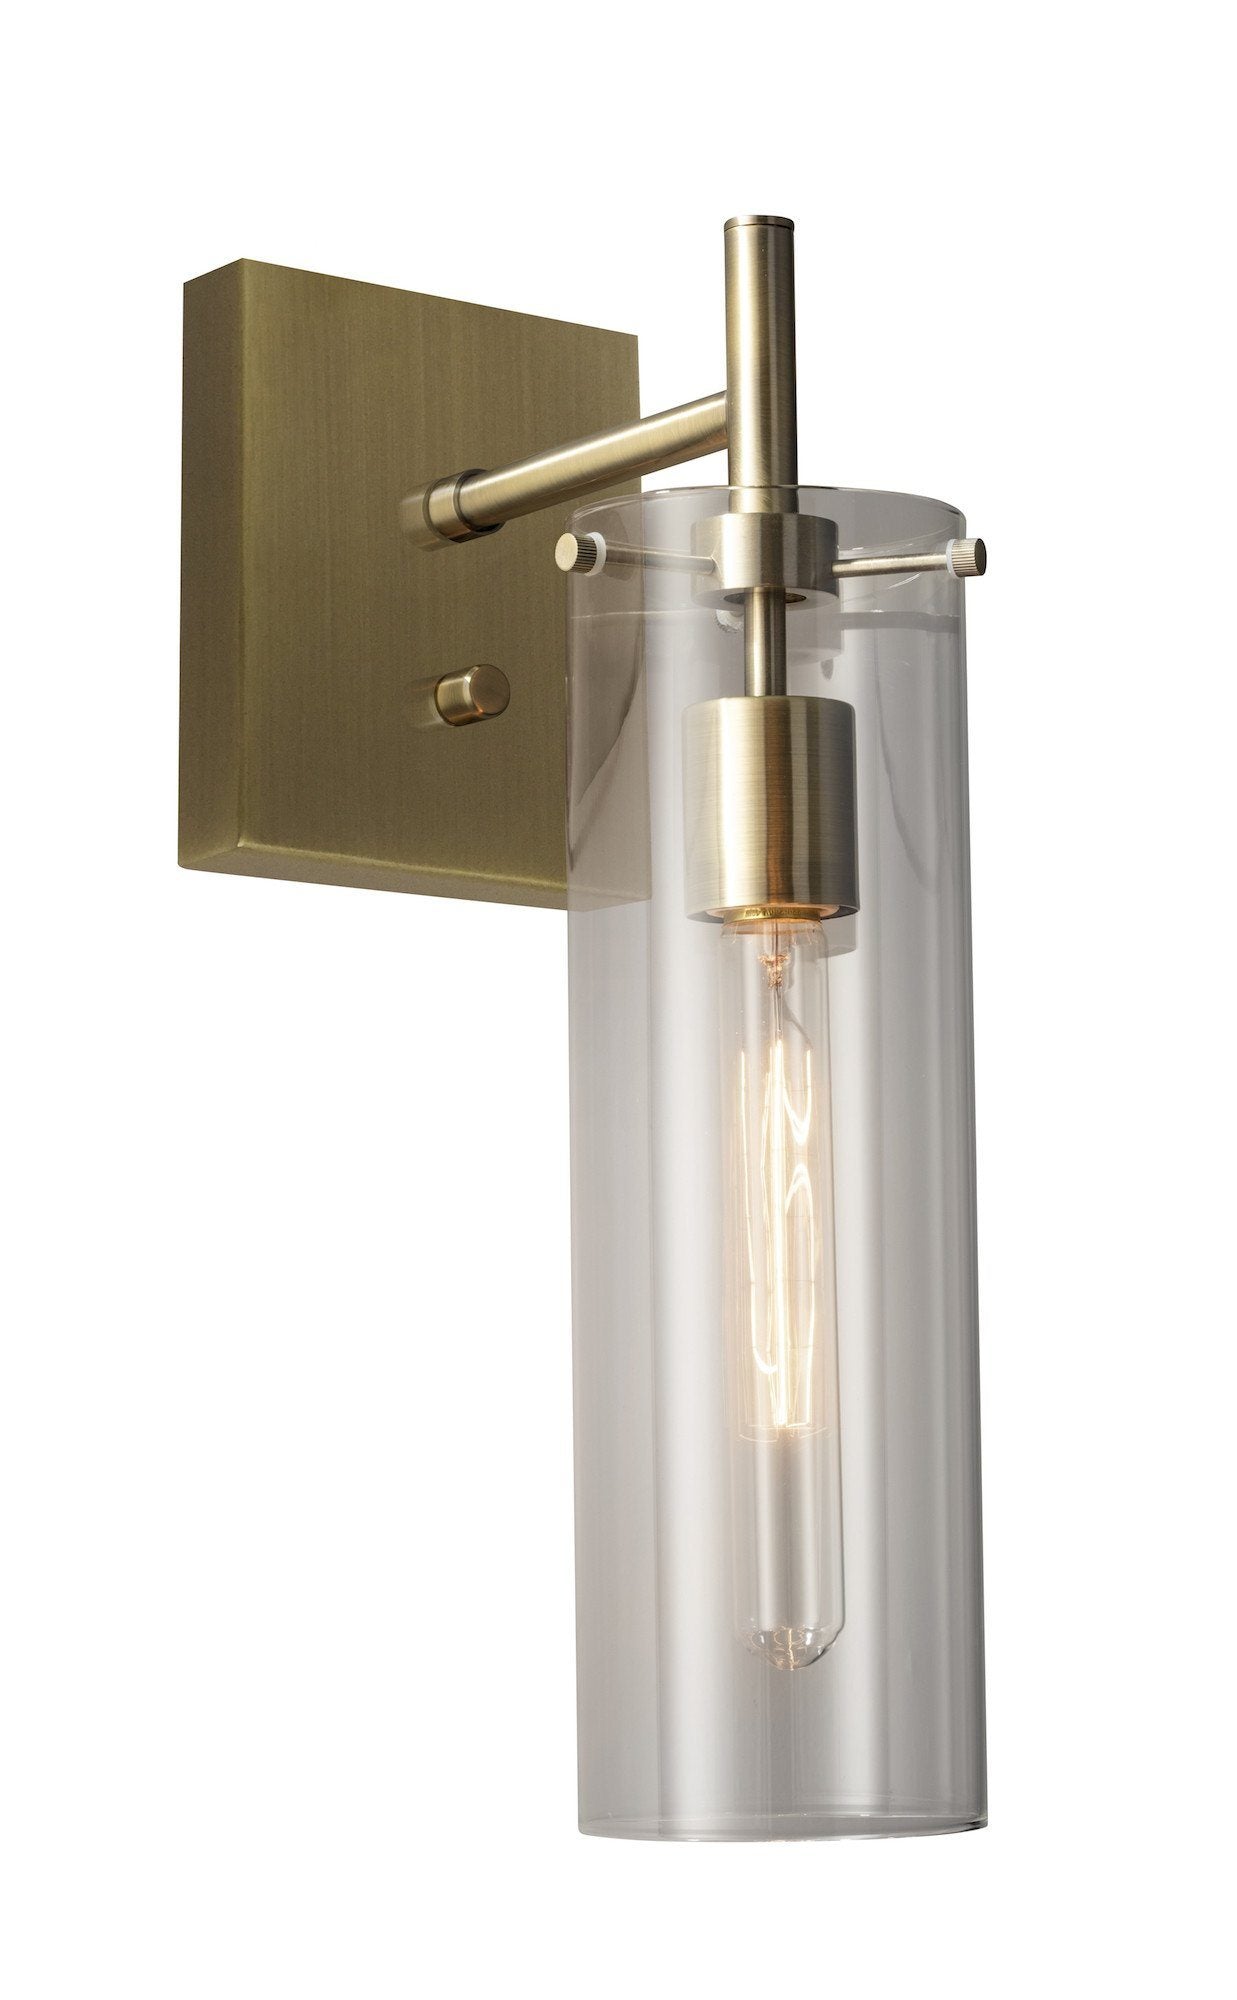 Dalton Anique Brass Plug-in Wall Lamp Lamps Adesso Clear 